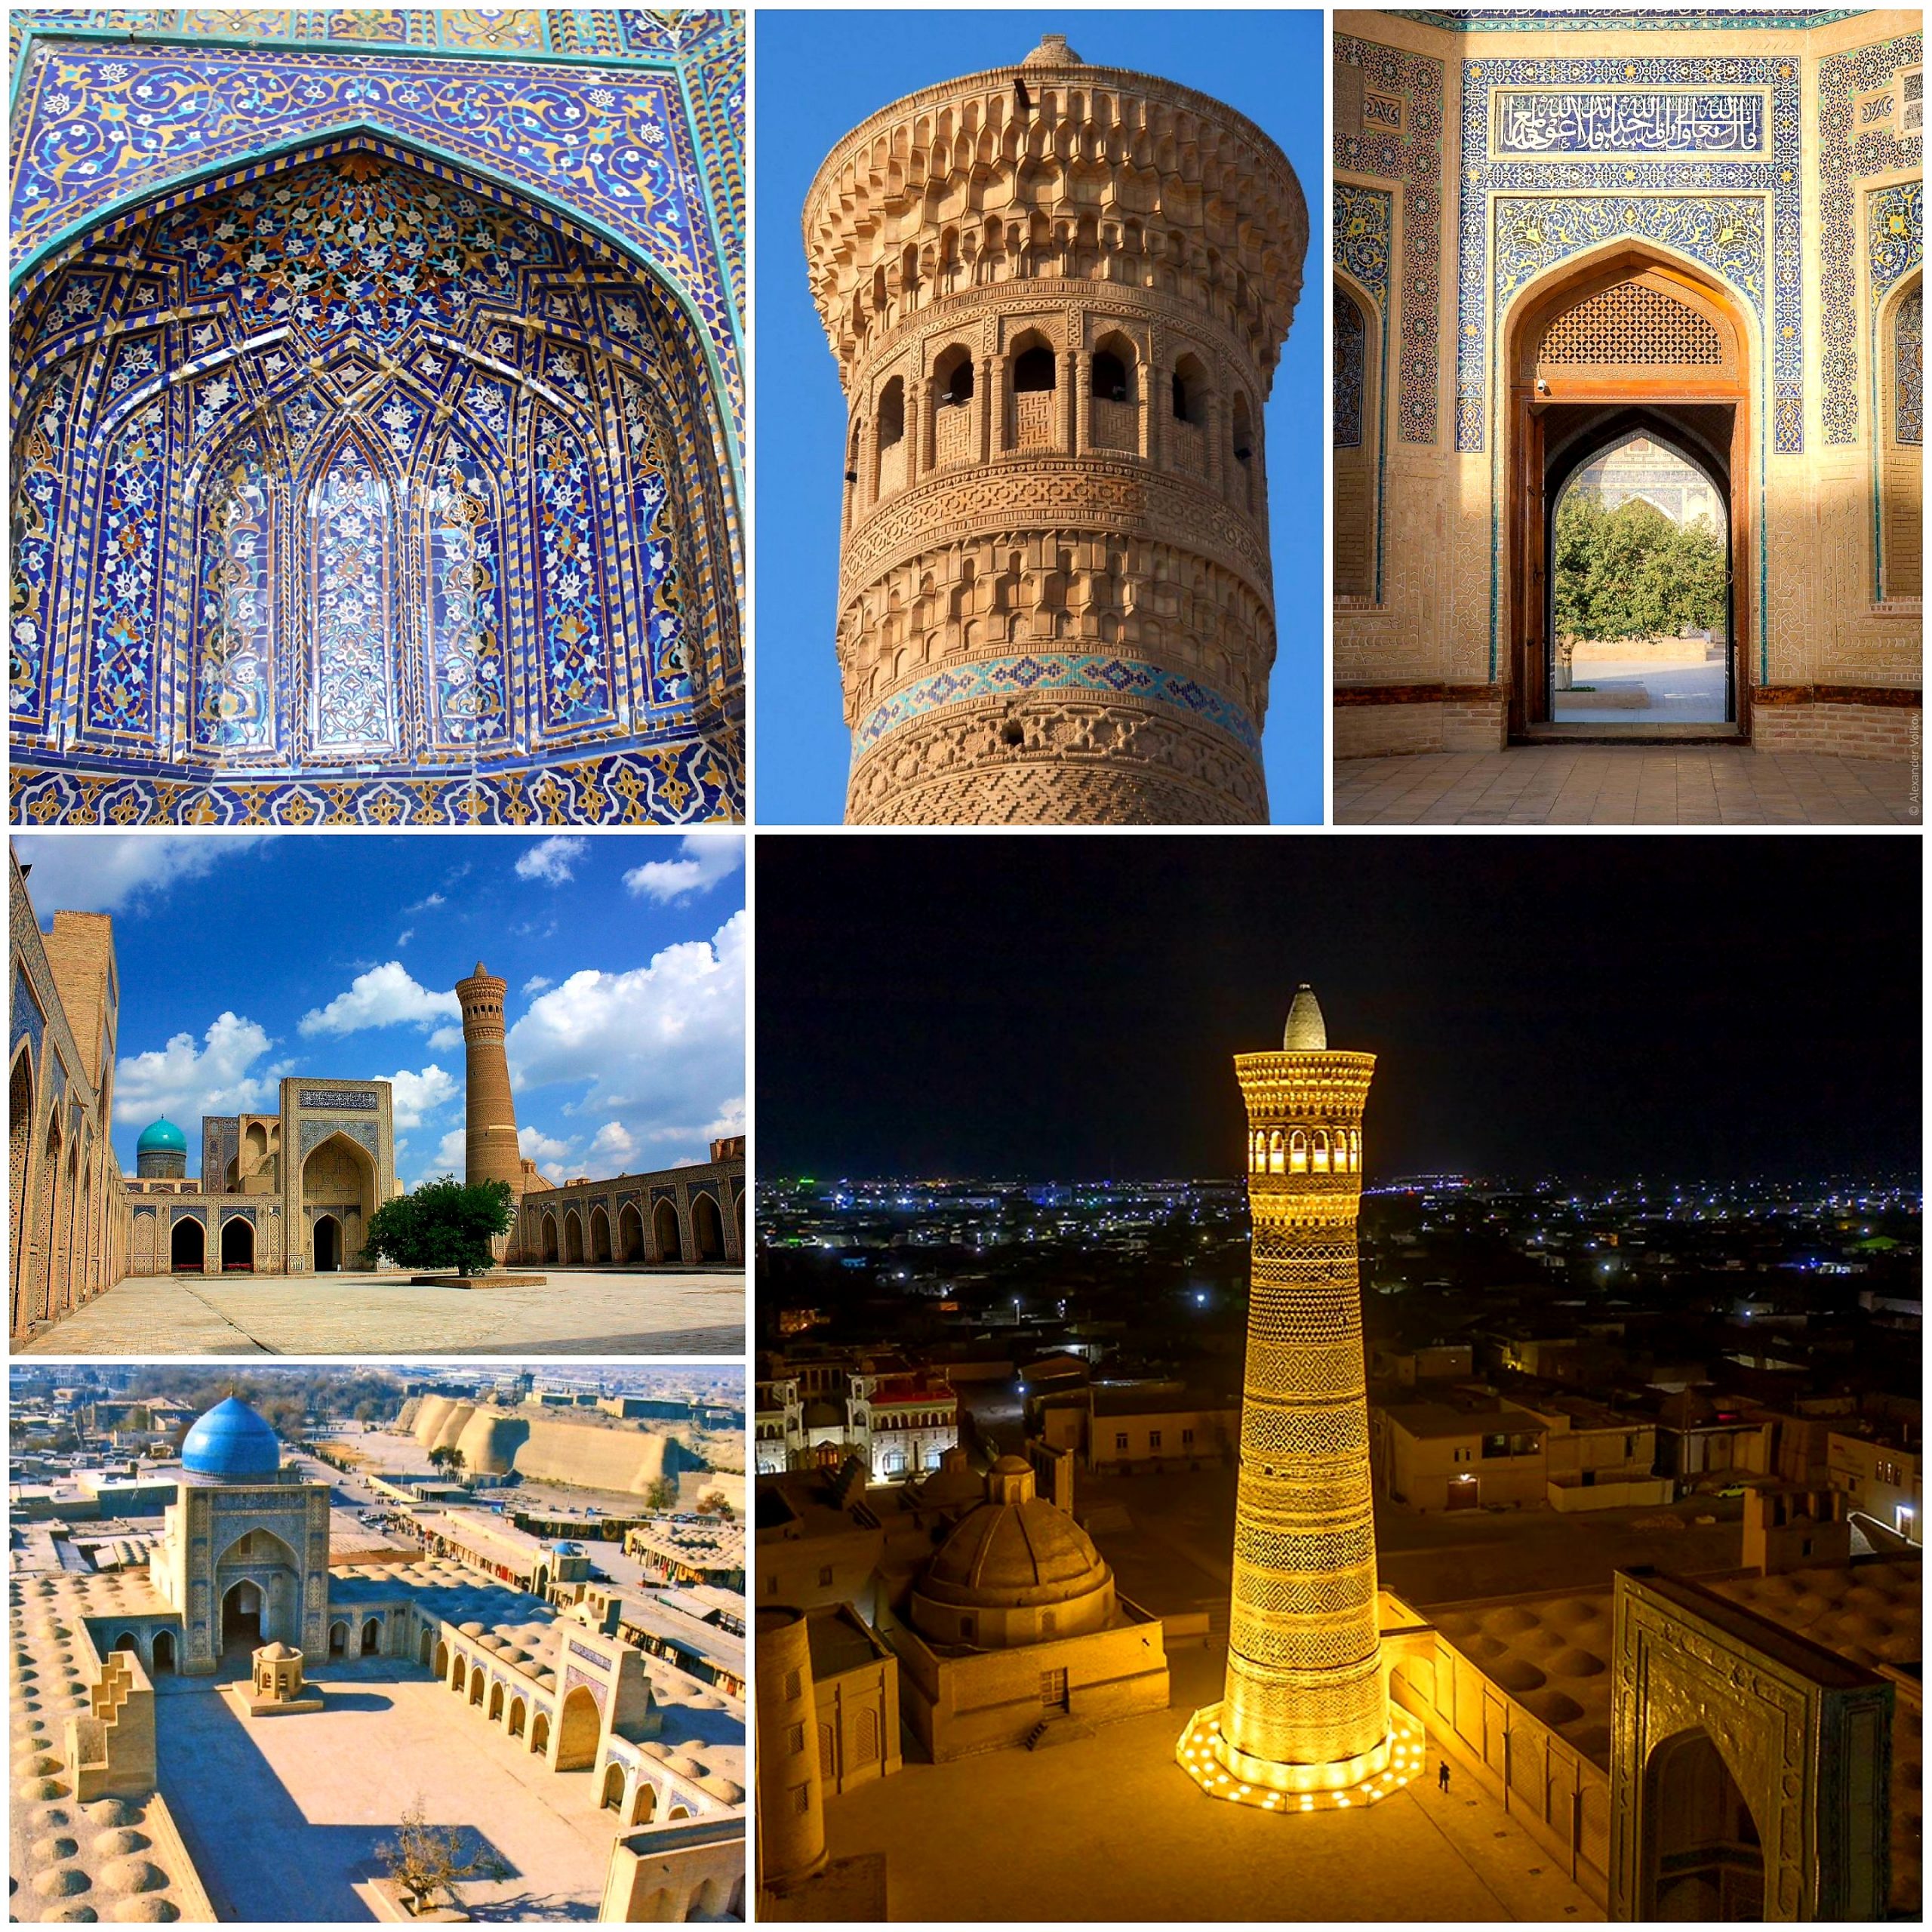 "مسجد كلان" رمز وطني في أوزبكستان وضمن قائمة اليونسكو للحفاظ على التراث العالمي